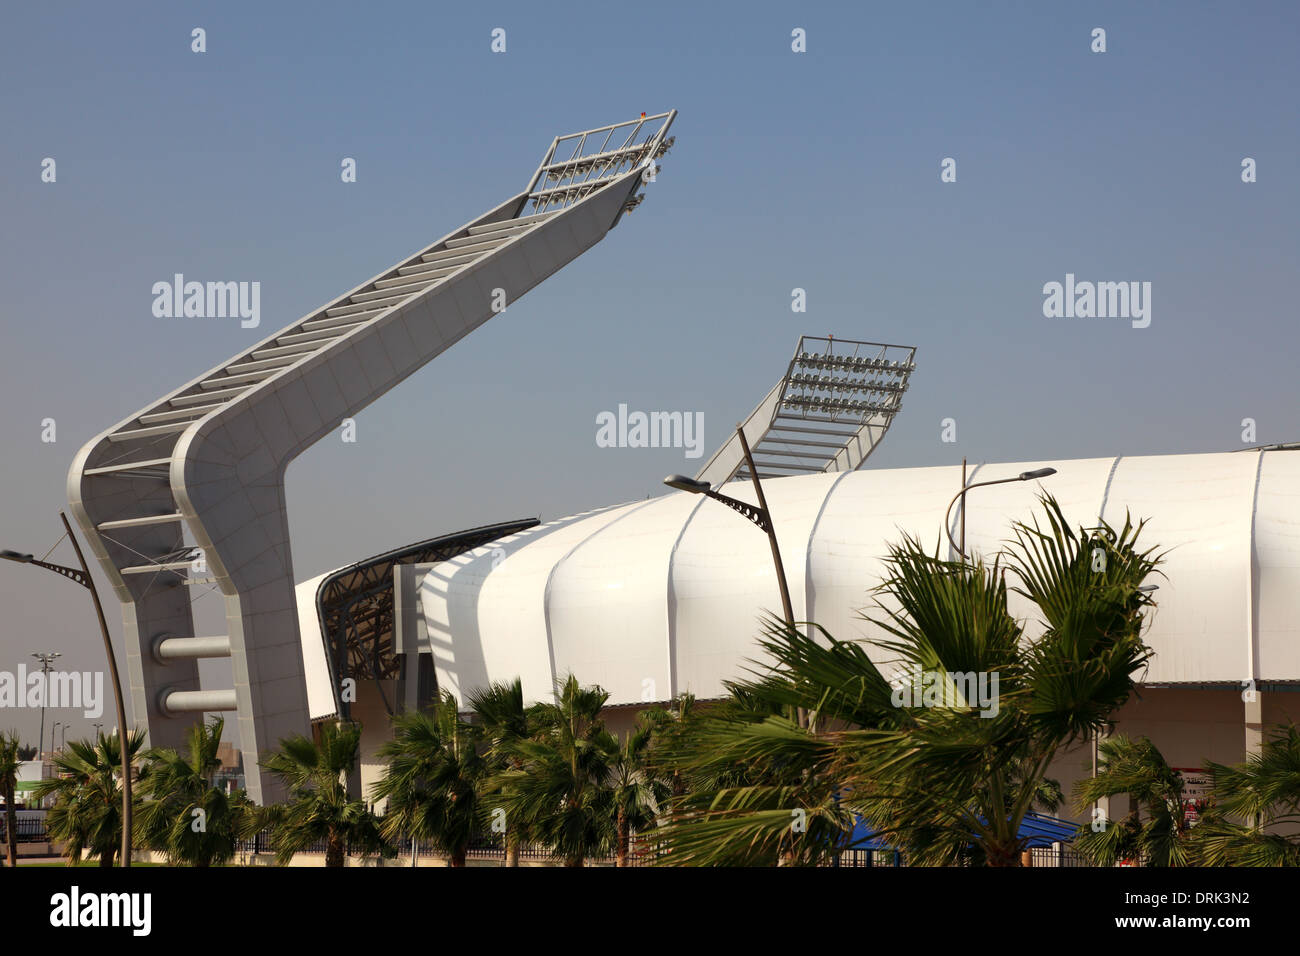 Lekhwiya Sports Stadium (Abdullah bin Khalifa Stadium) in Doha, Qatar Stock Photo